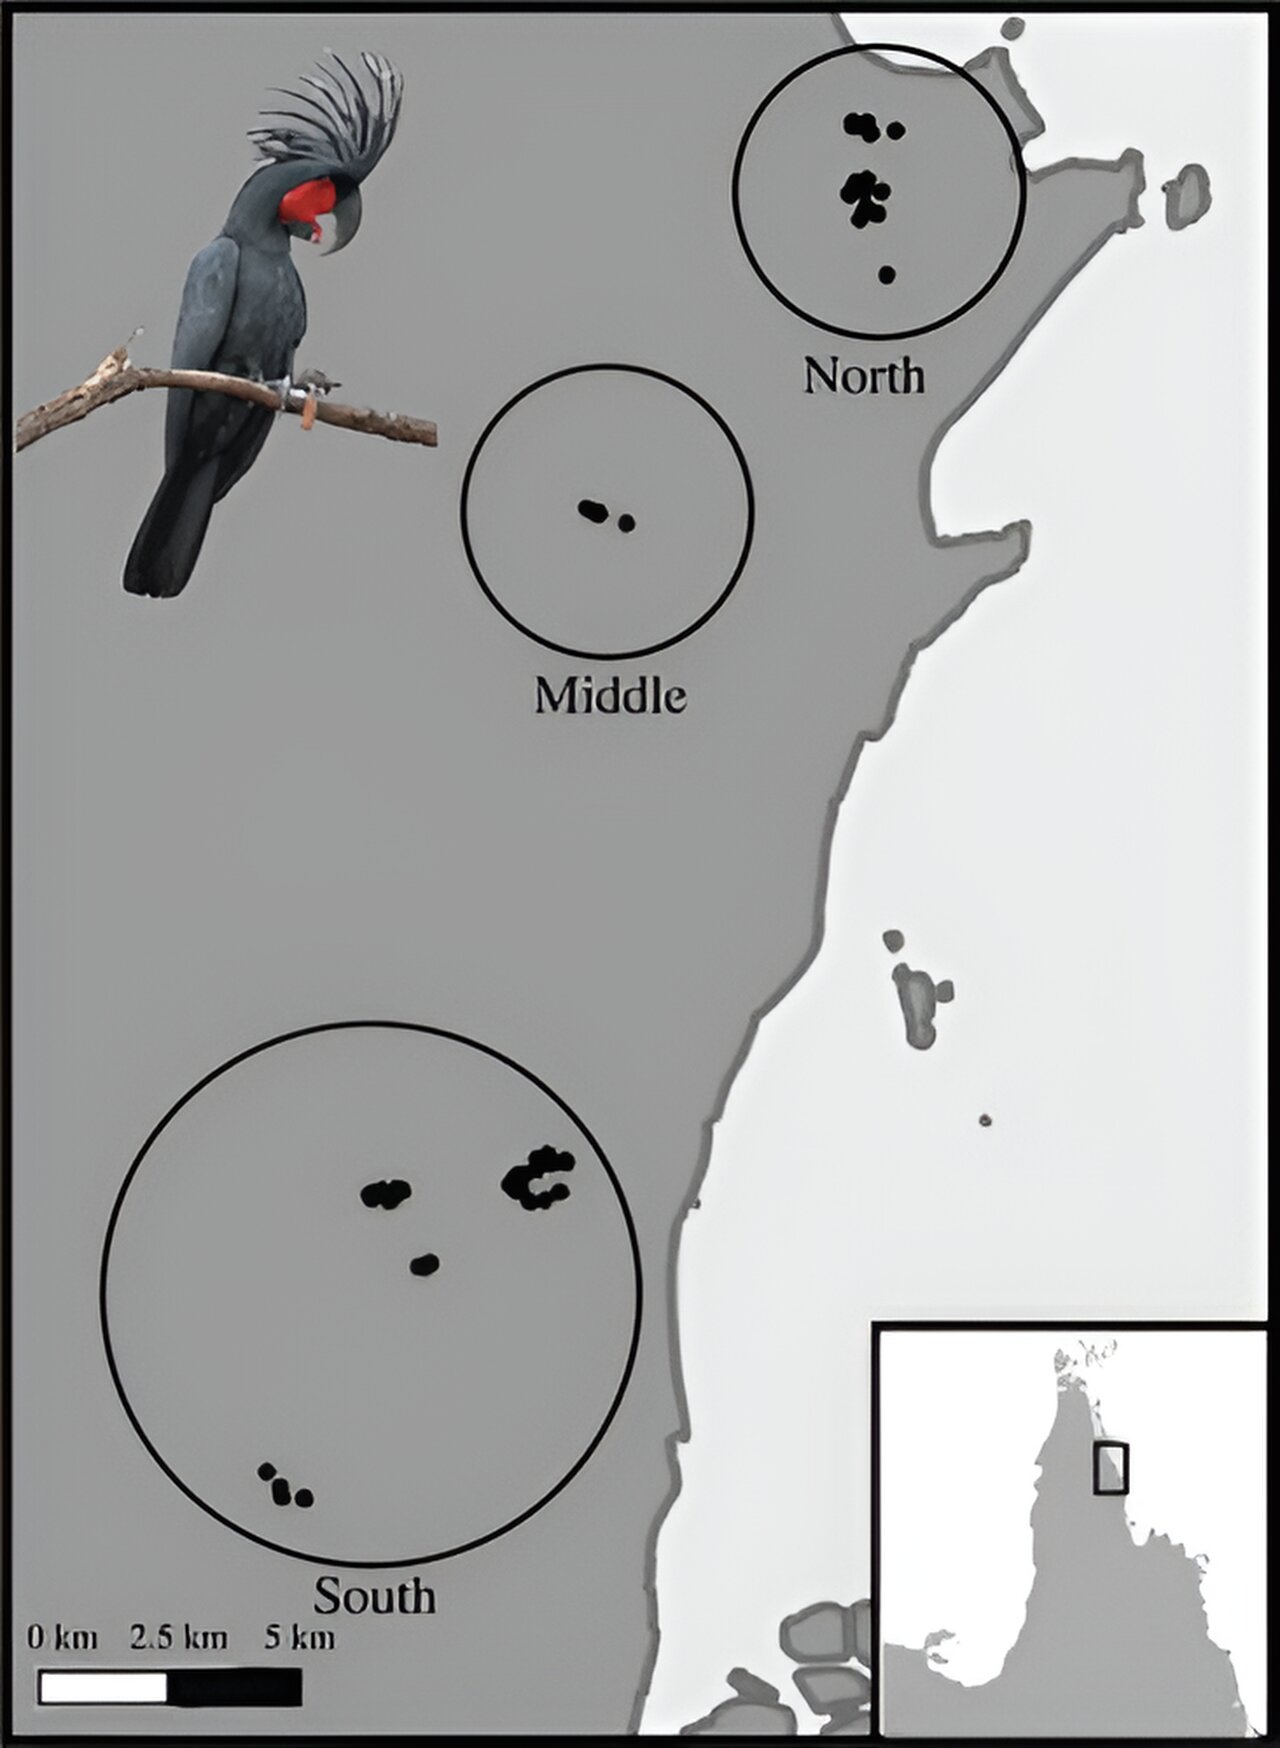 棕榈凤头鹦鹉削树枝做鼓槌用于敲击树枝